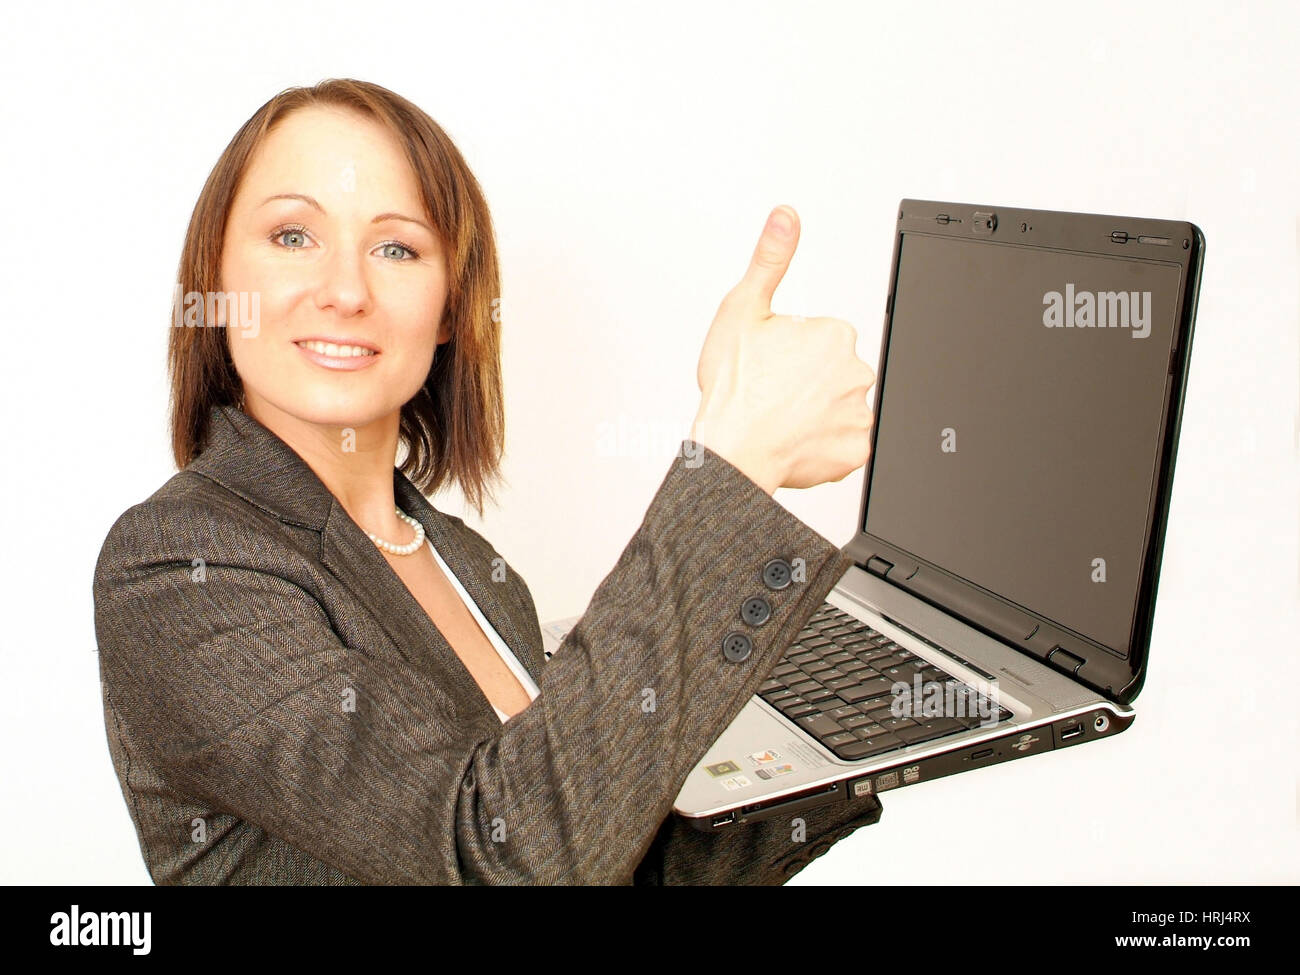 Junge, Gesch optimistische?ftsfrau mit Laptop - joven y exitosa mujer de negocios con ordenador portátil, Symbolfotos Foto de stock